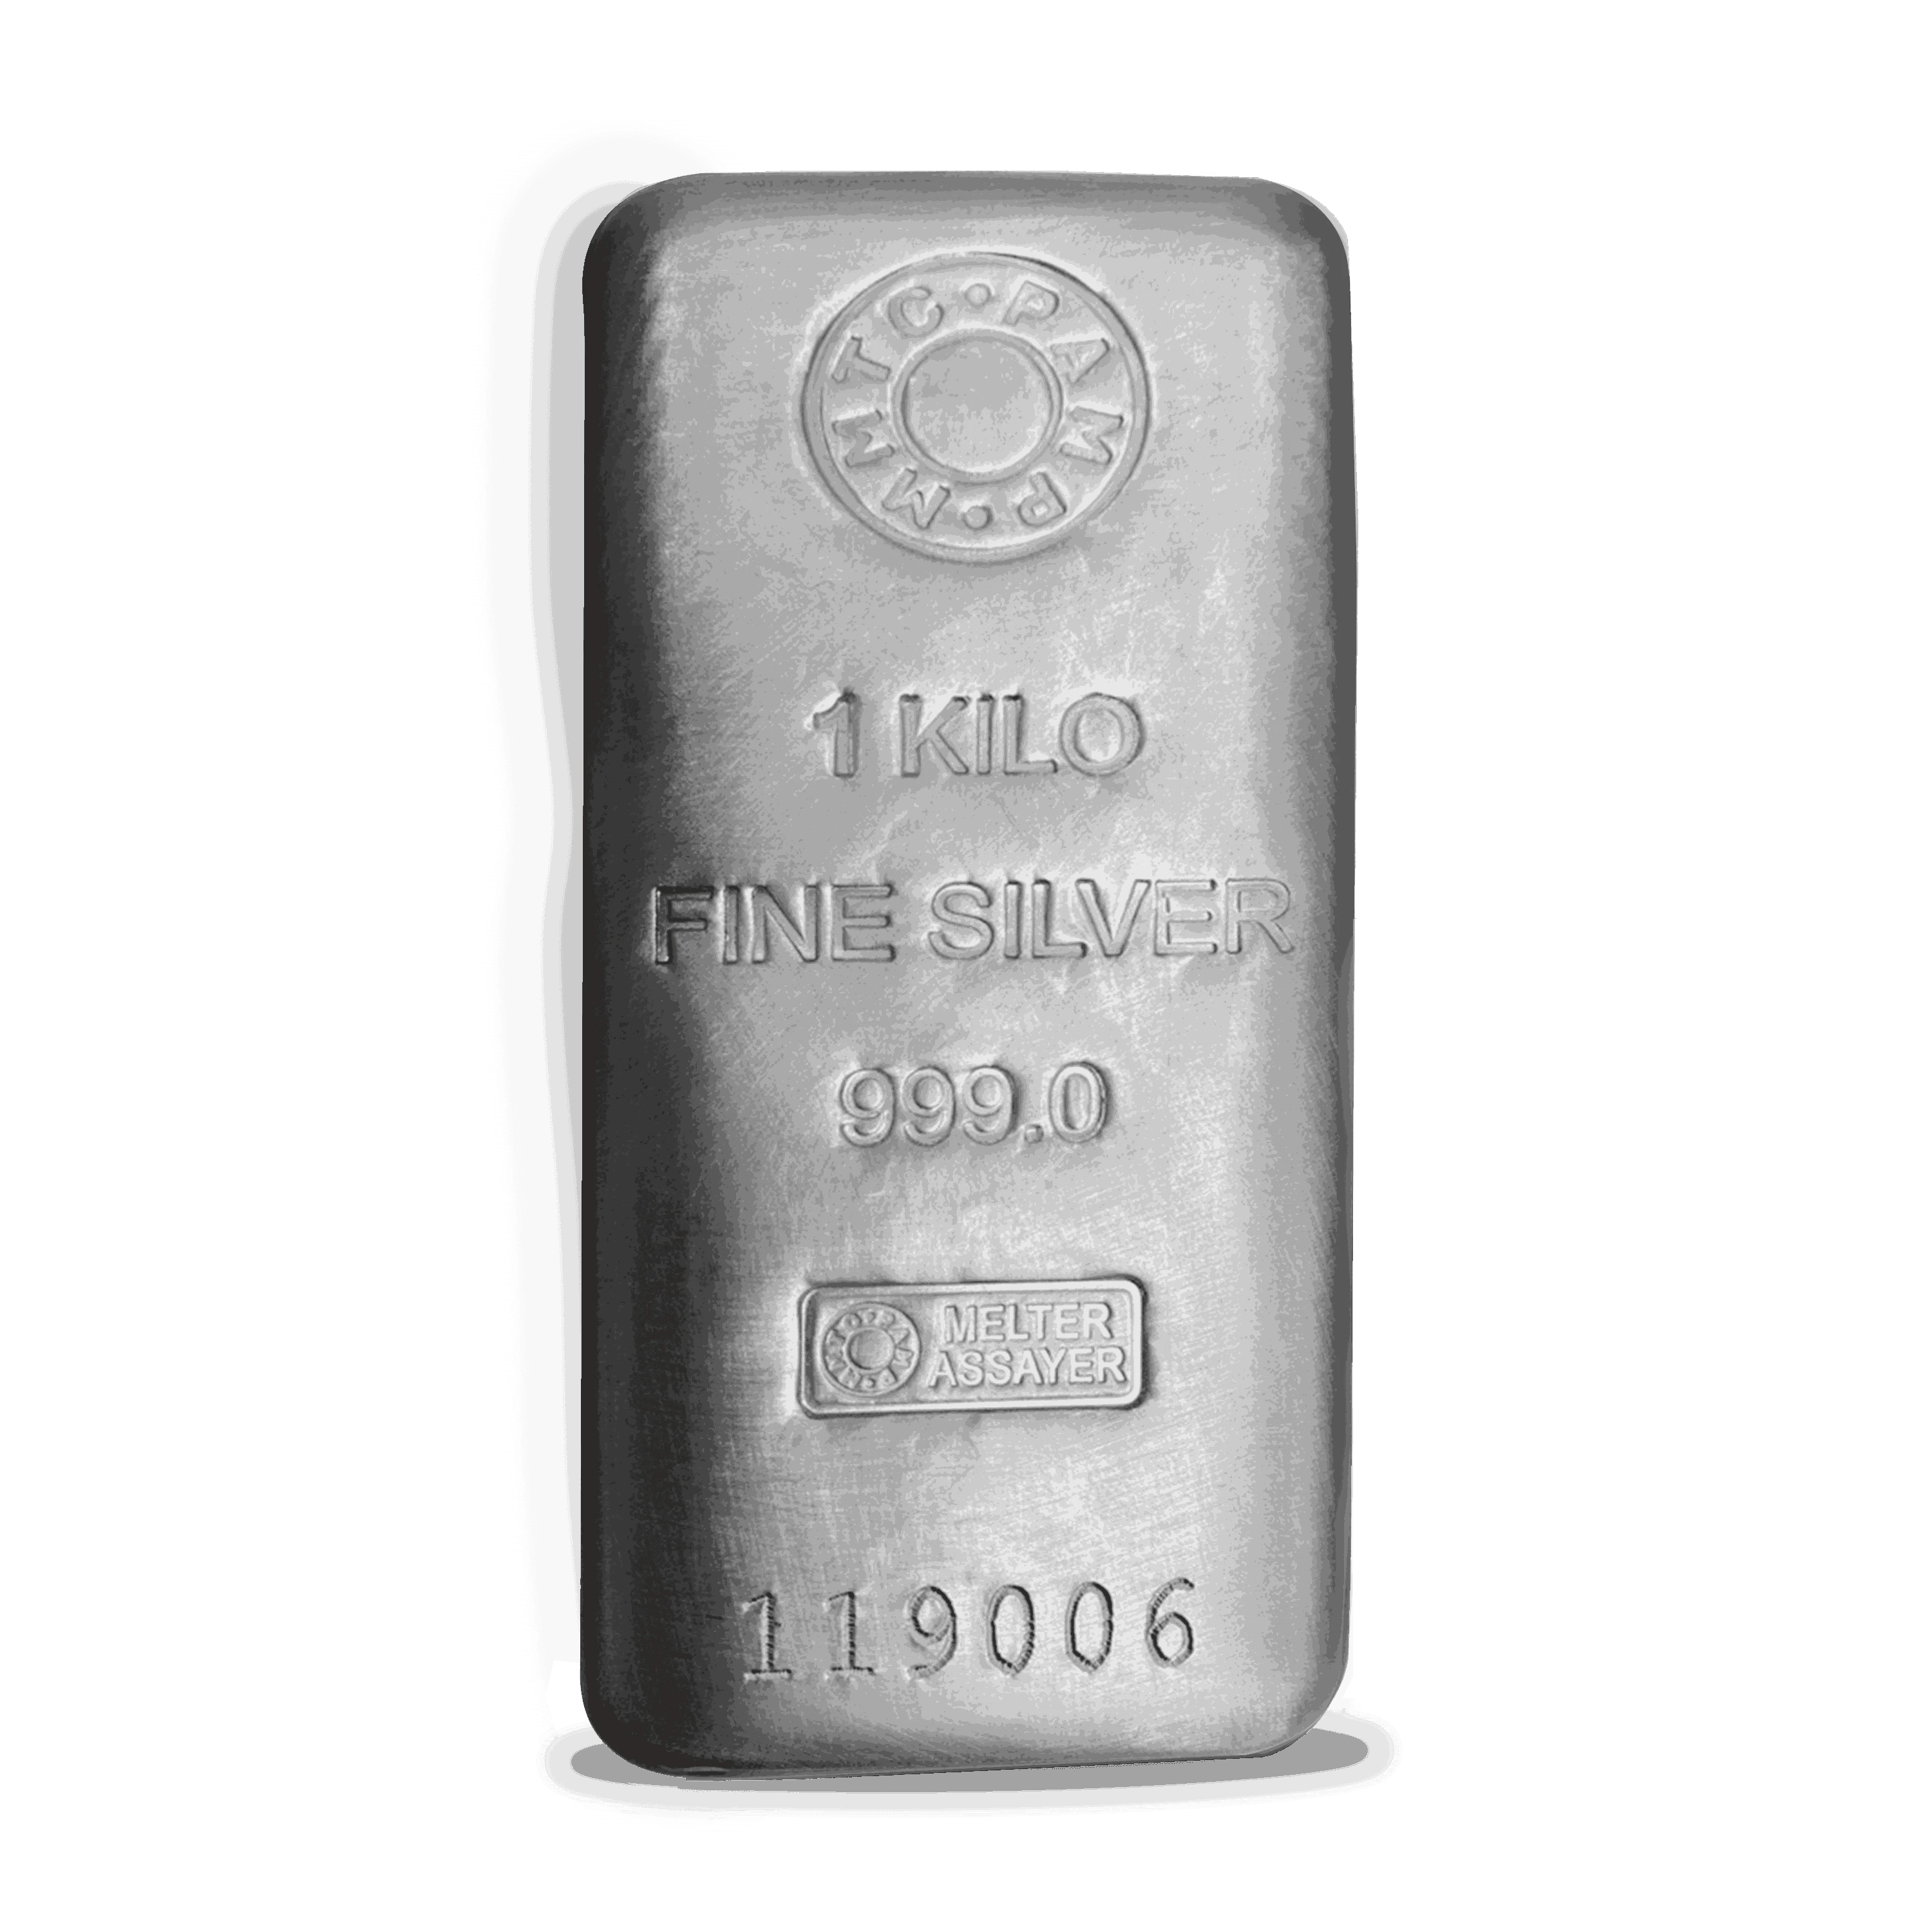 1kg silvers